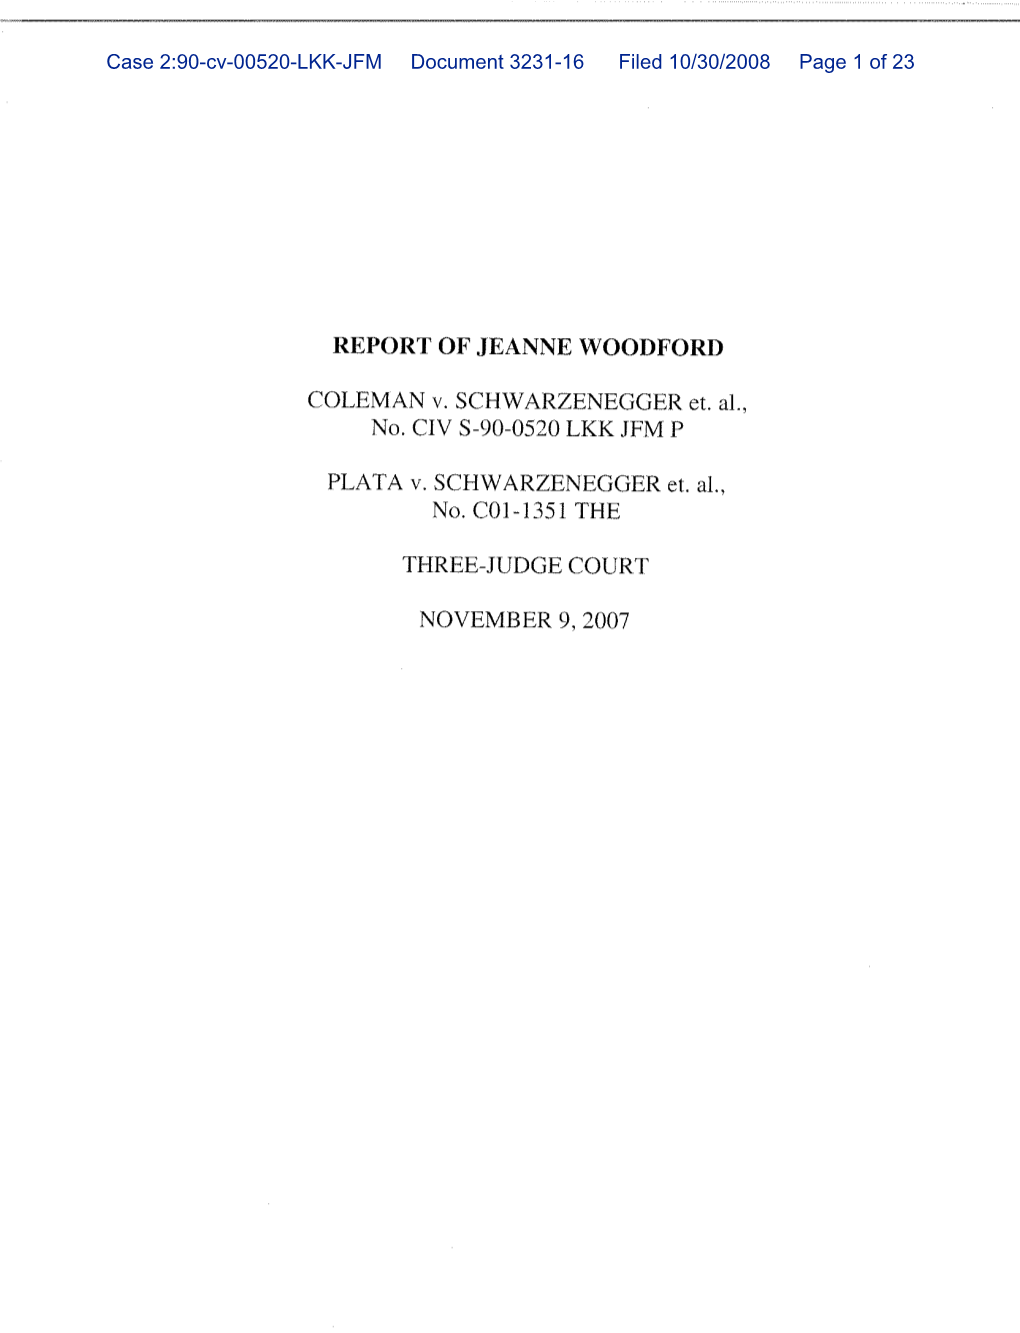 Nov. 2008 Report, Coleman DE 3231-16/Plata DE 1714-16